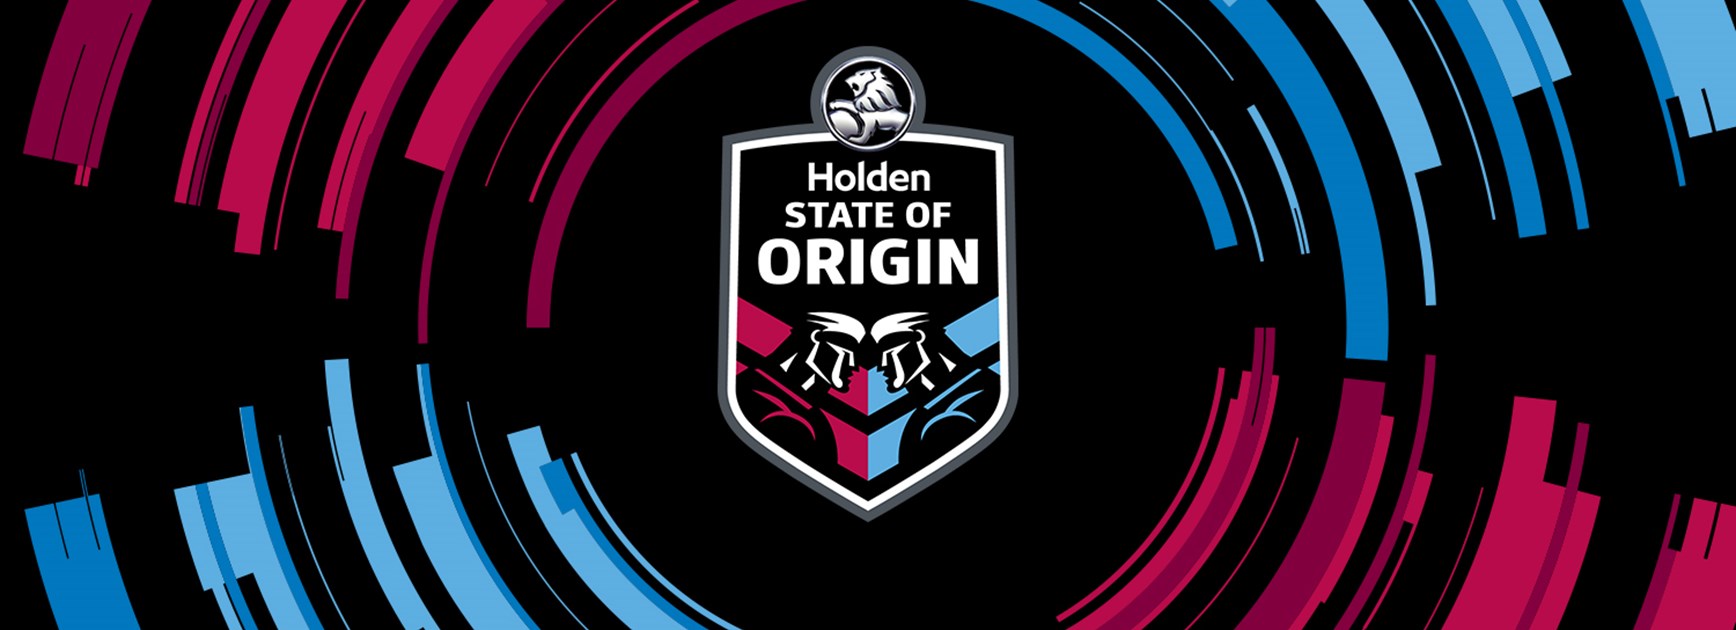 State of Origin III match officials